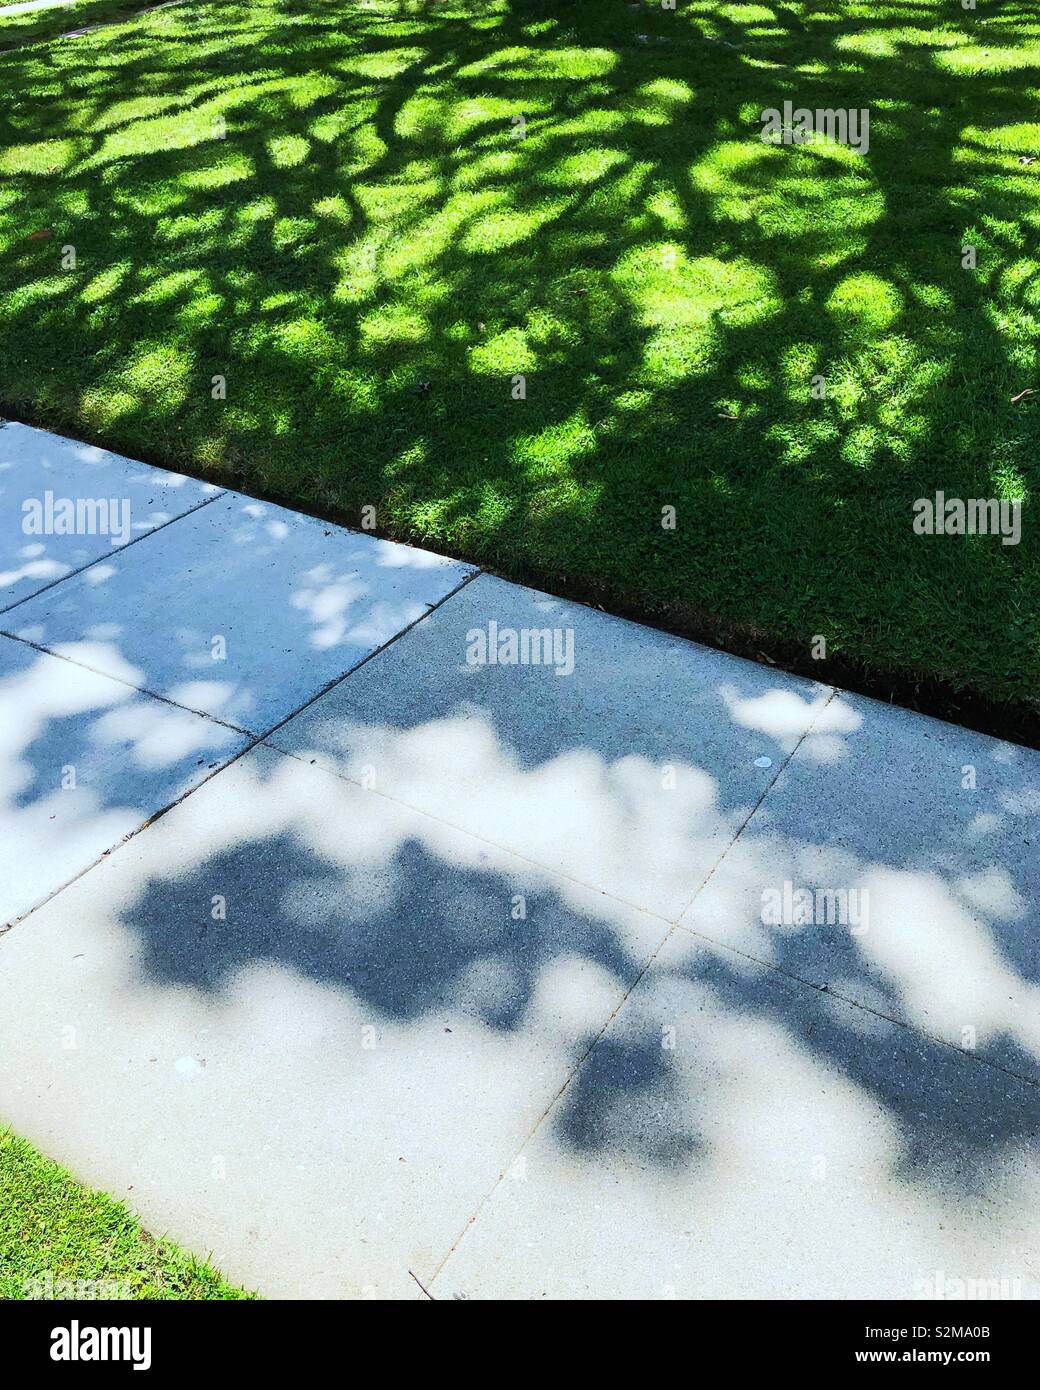 Schatten eines grossen Baumes verteilt auf einem Rasen Stockfoto